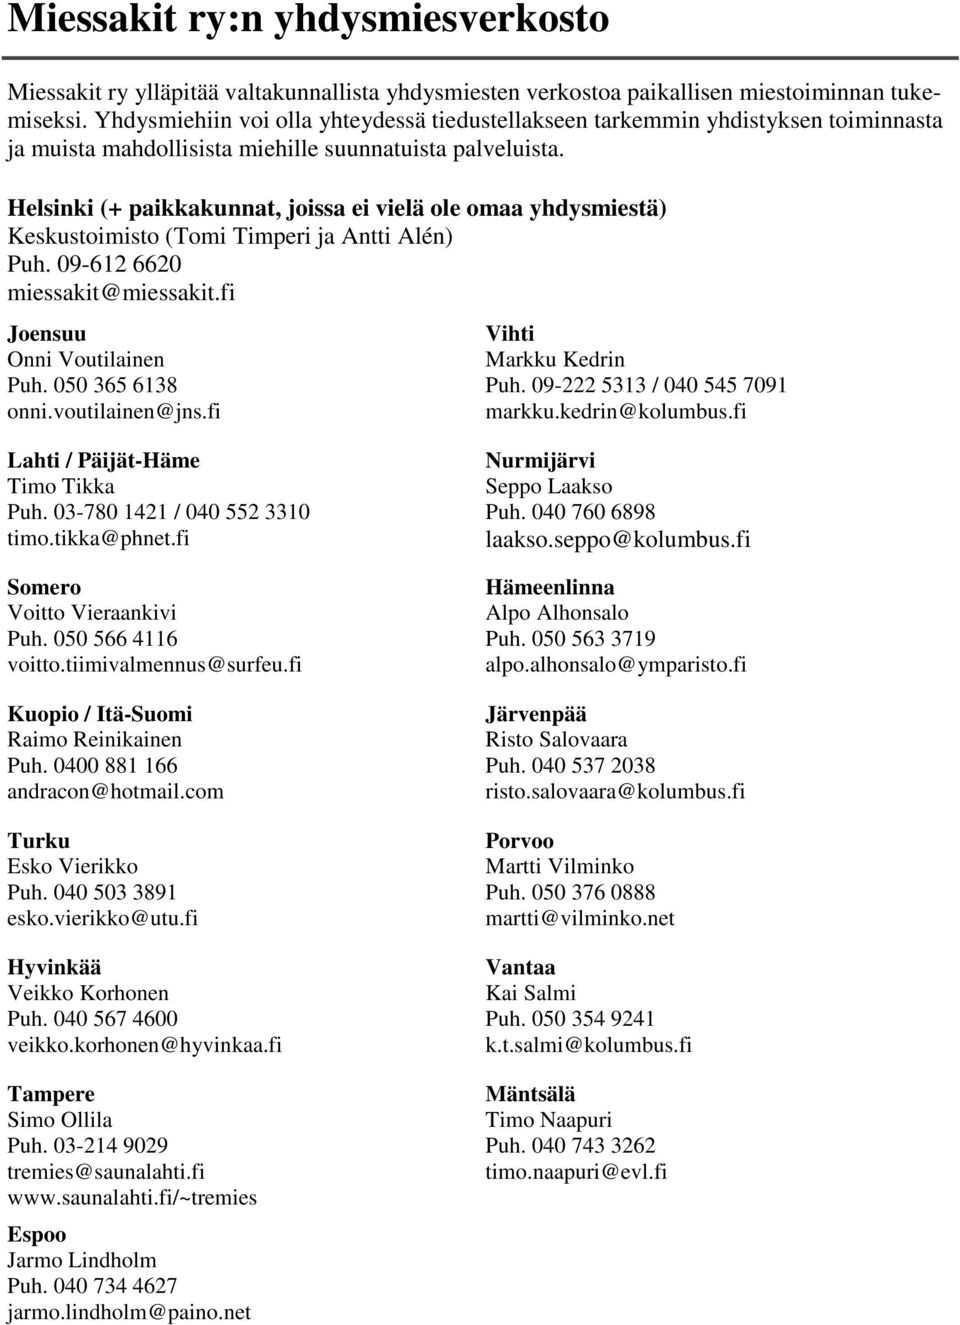 Helsinki (+ paikkakunnat, joissa ei vielä ole omaa yhdysmiestä) Keskustoimisto (Tomi Timperi ja Antti Alén) Puh. 09-612 6620 miessakit@miessakit.fi Joensuu Onni Voutilainen Puh. 050 365 6138 onni.